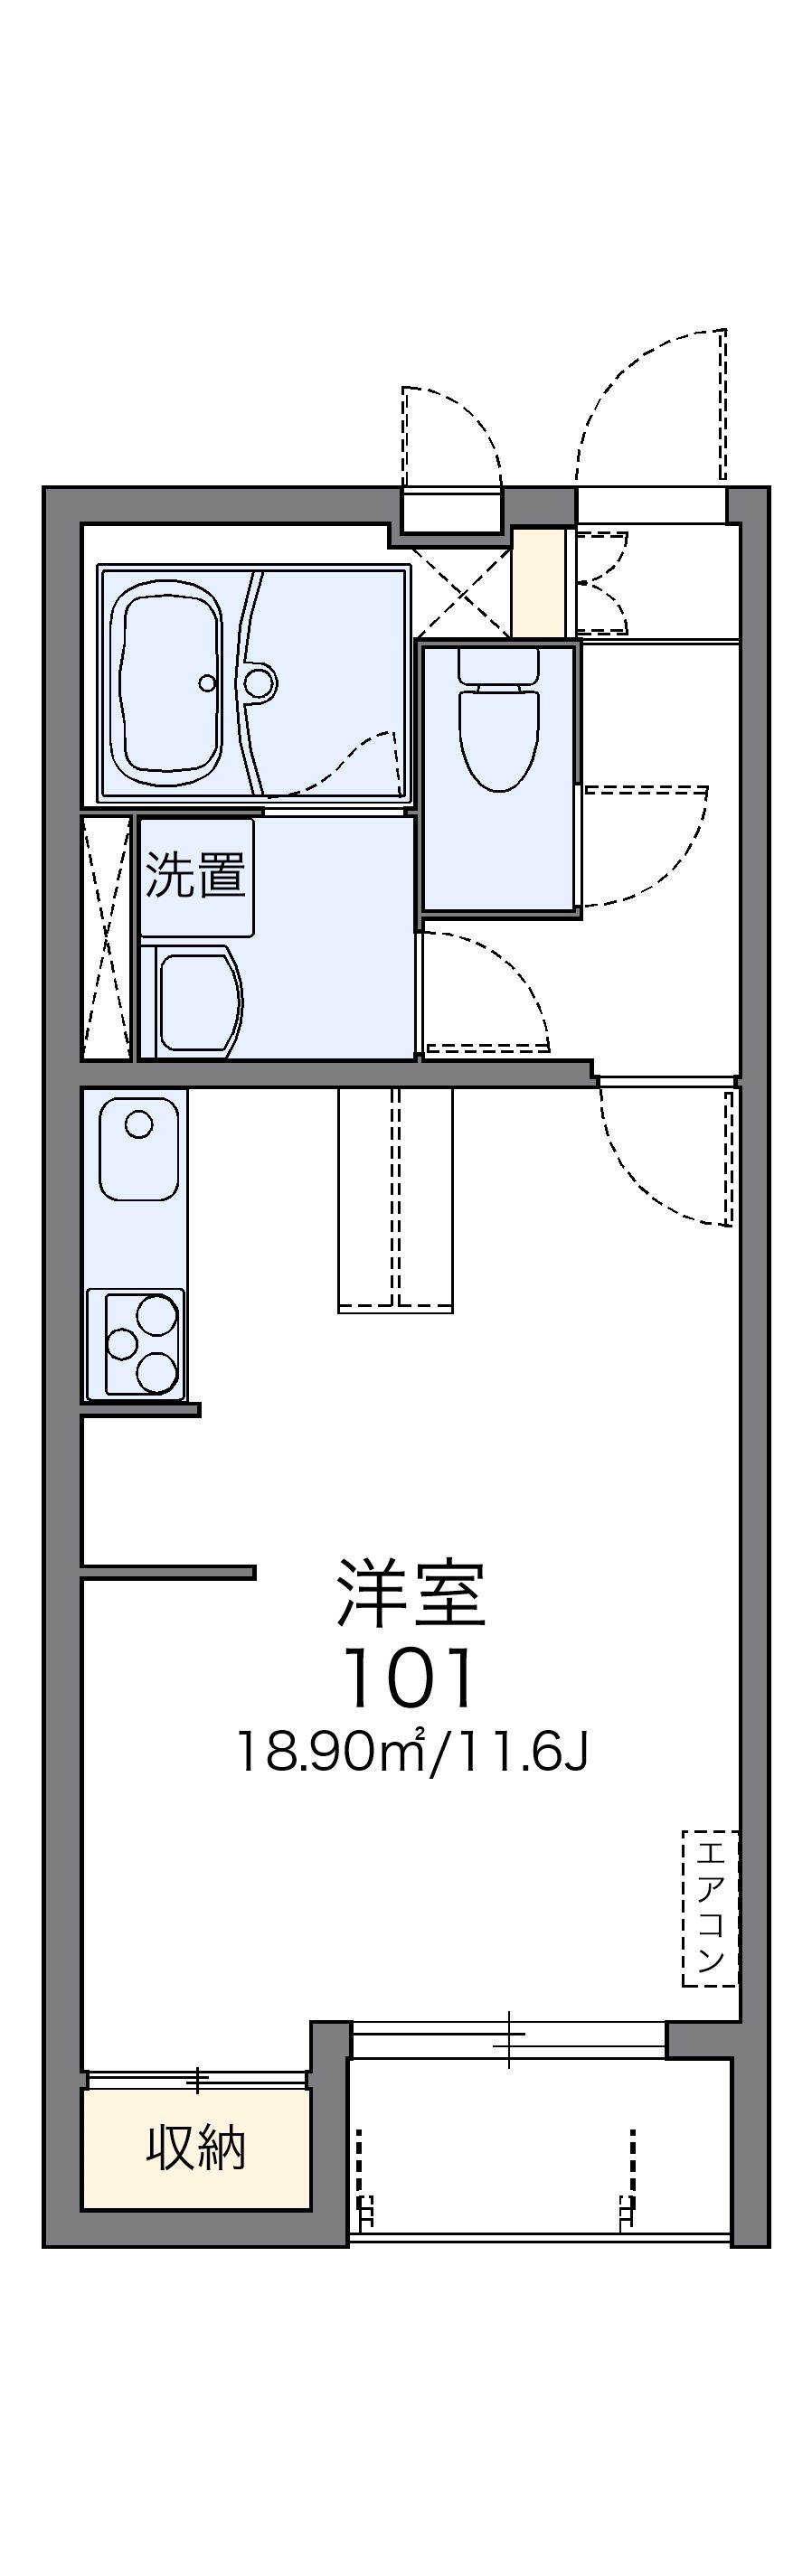 レオネクストエポック２１ 3号室 新潟駅 新潟市西区 レオパレス21 の賃貸アパート